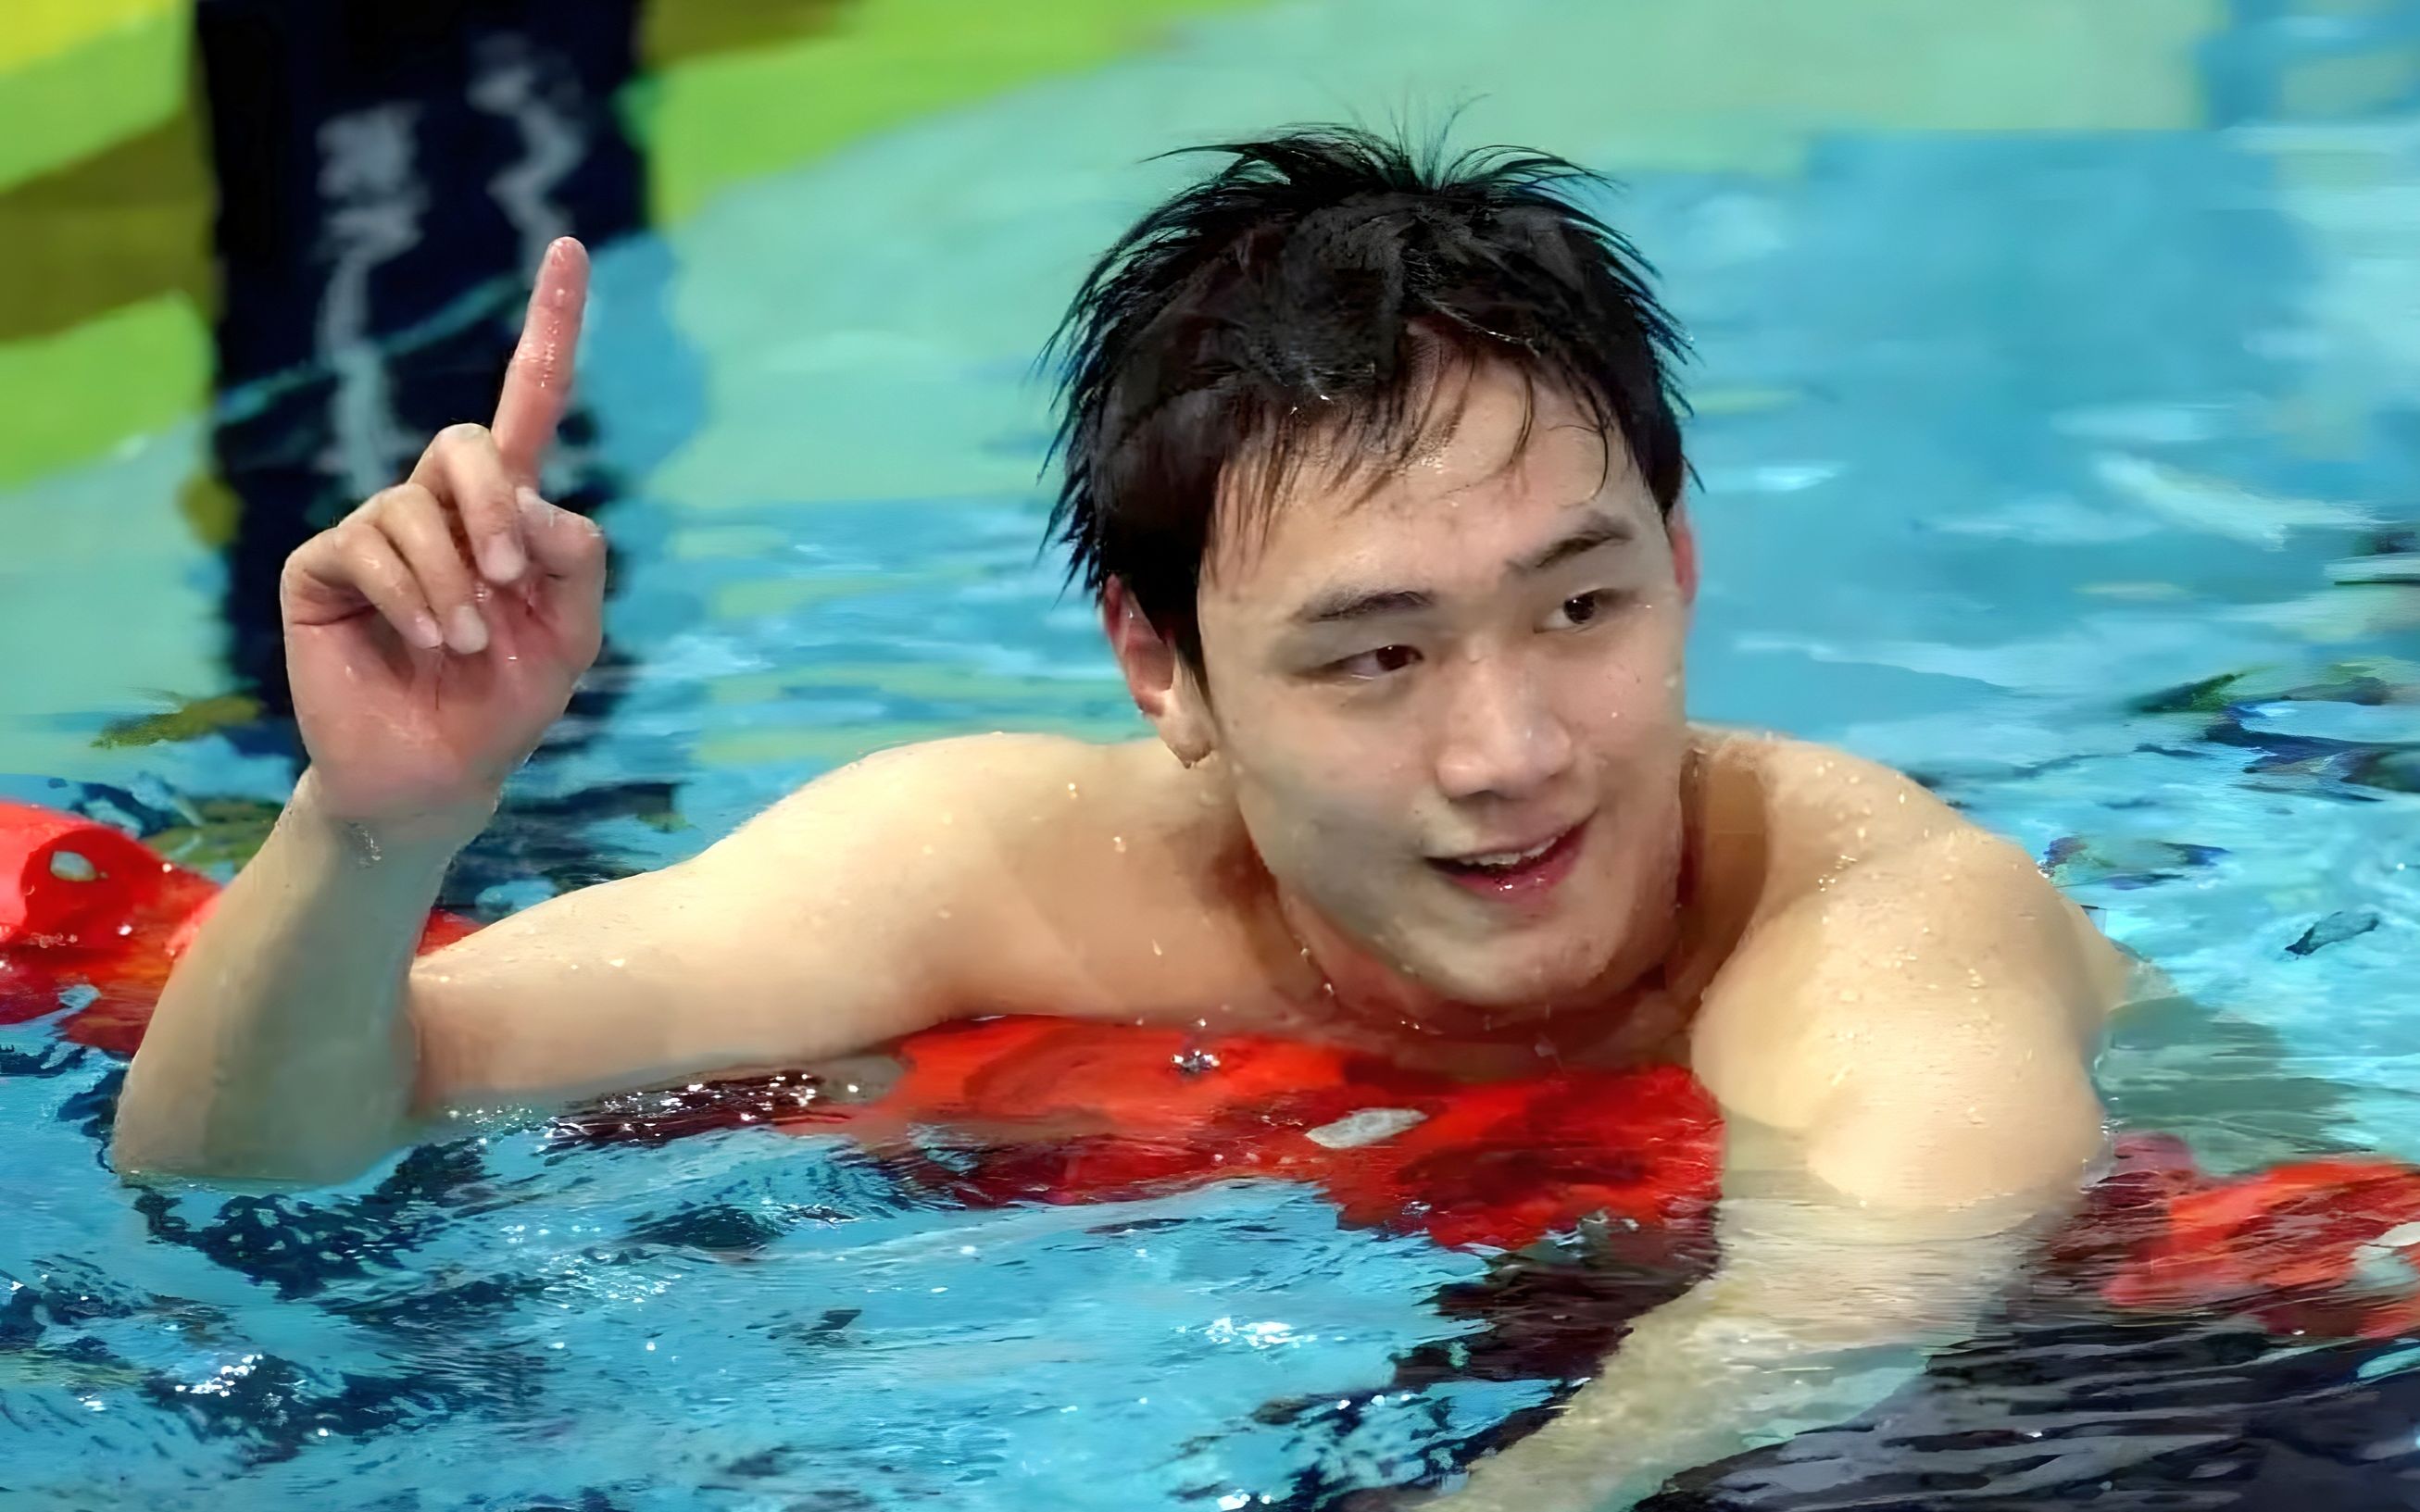 可曾记得他?800自世界纪录,中国男子游泳首位世界冠军——张琳